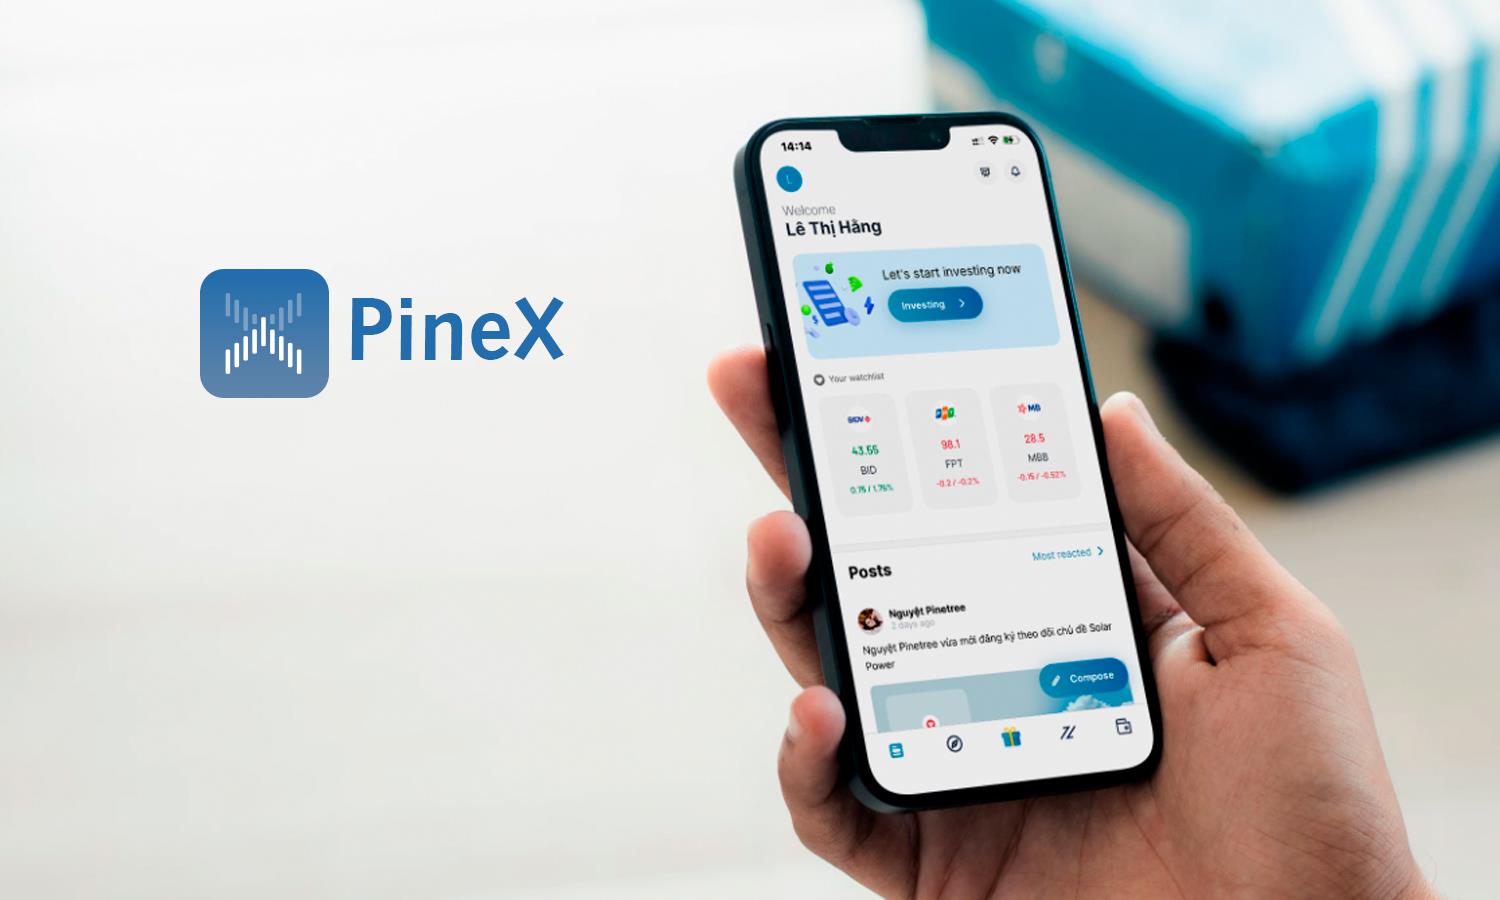 Thảo luận trong ứng dụng PineX - Gen Z ra sao khi thị trường chứng khoán rung lắc mạnh? - Ảnh 2.